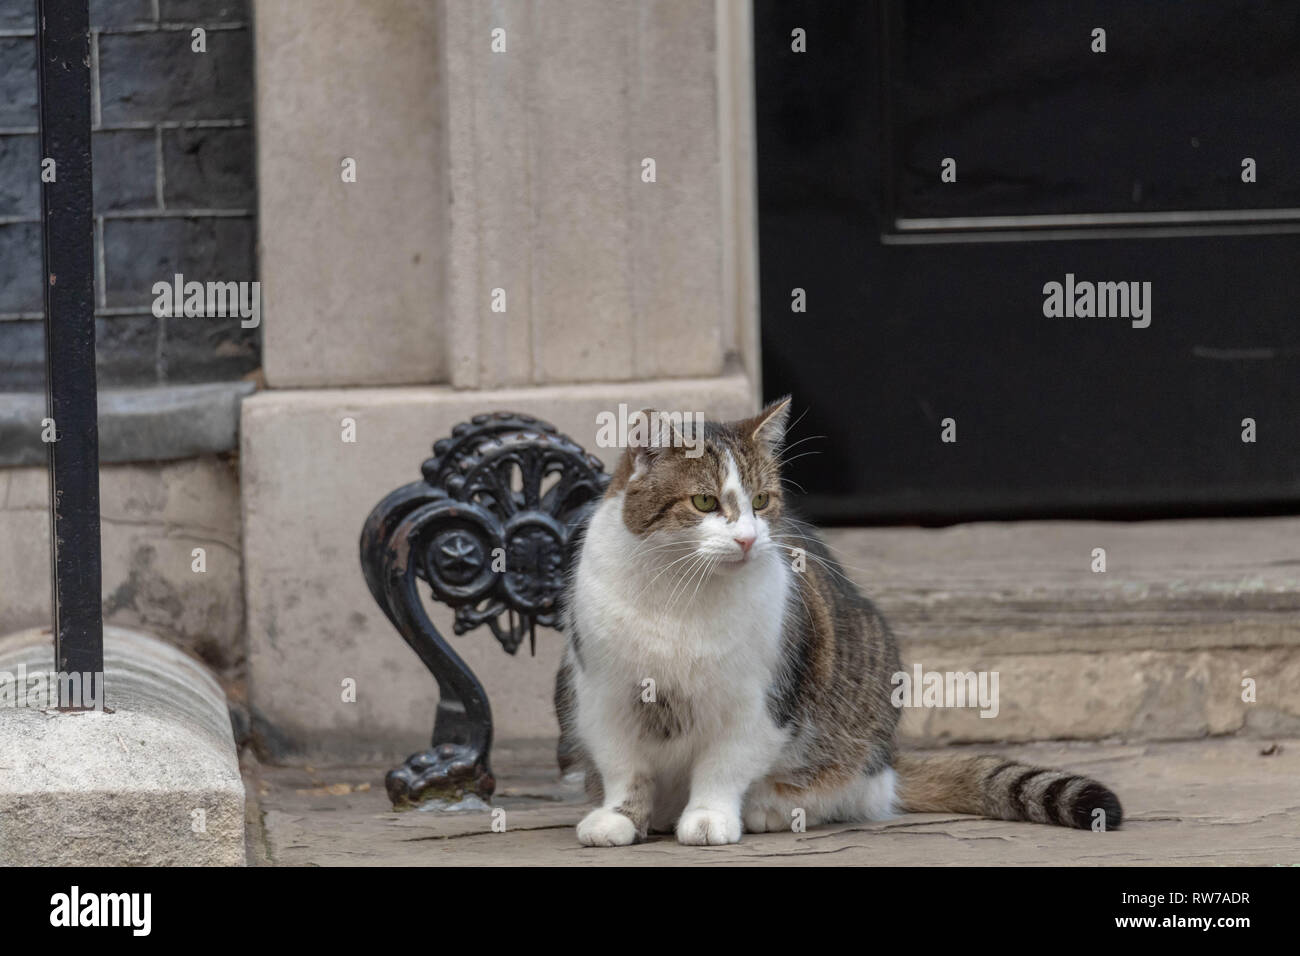 Londres, Royaume-Uni. 5 mars 2019, Larry, le chat à l'extérieur de 10 Downing Street Downing Street, London, UK. Crédit : Ian Davidson/Alamy Live News Banque D'Images